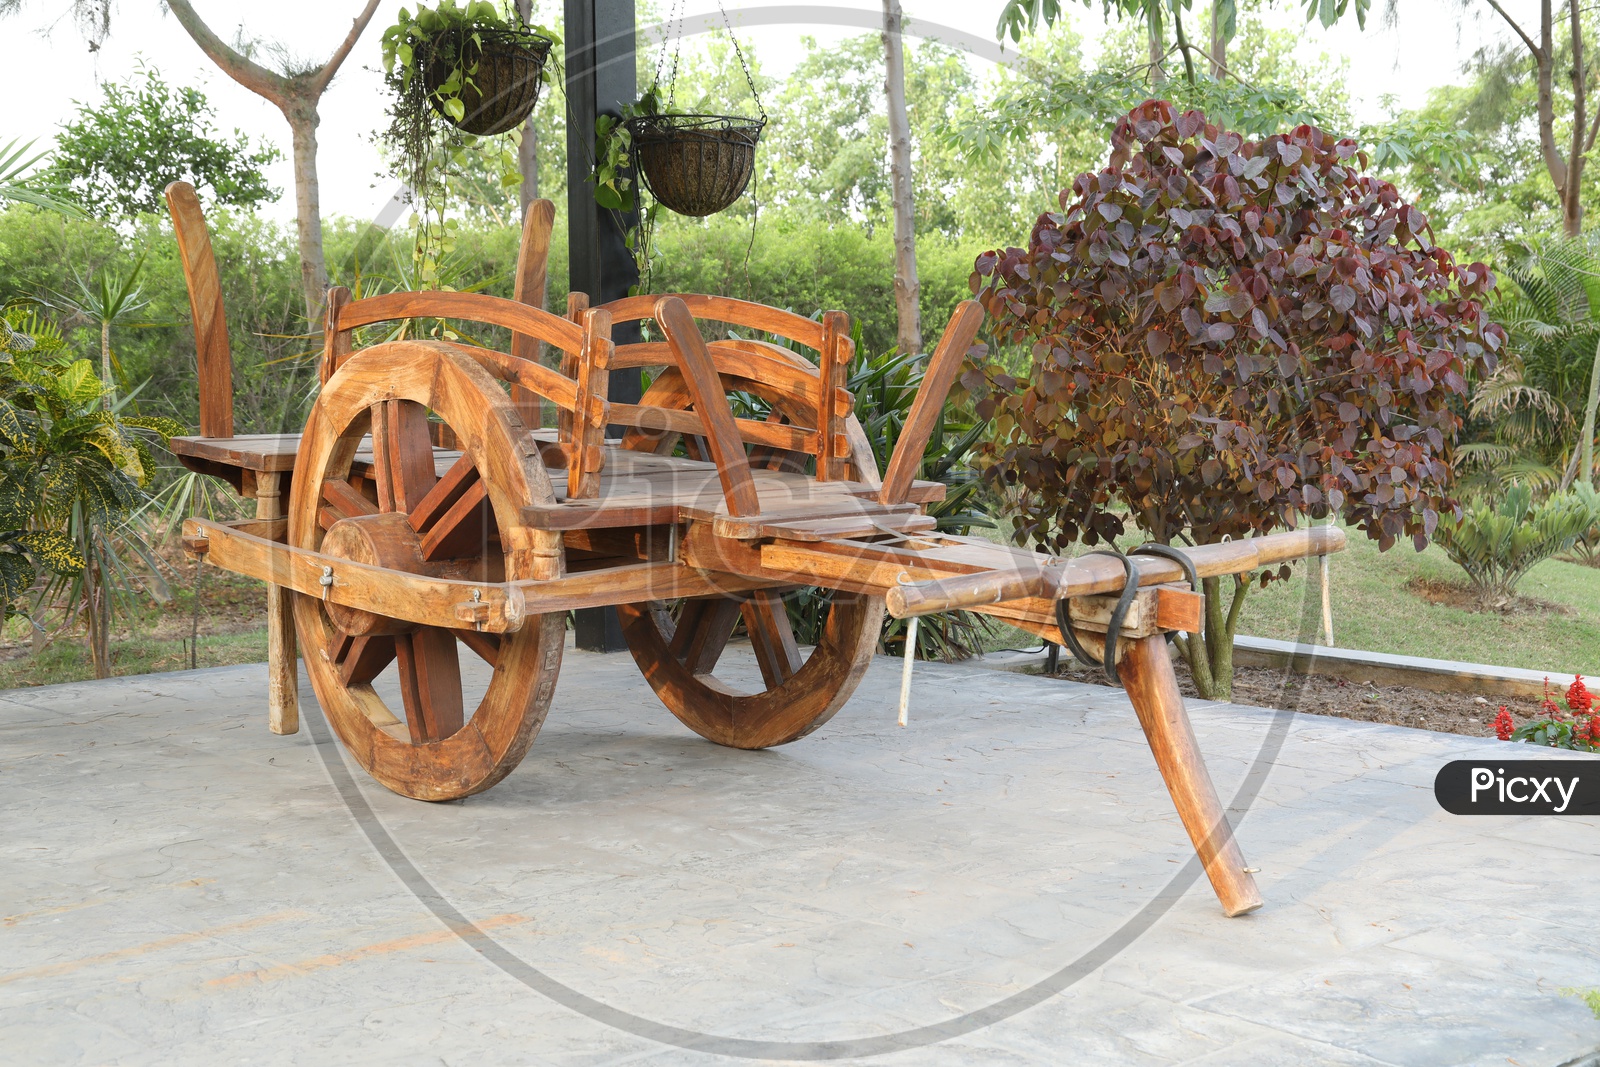 A Model of a Bullock Cart